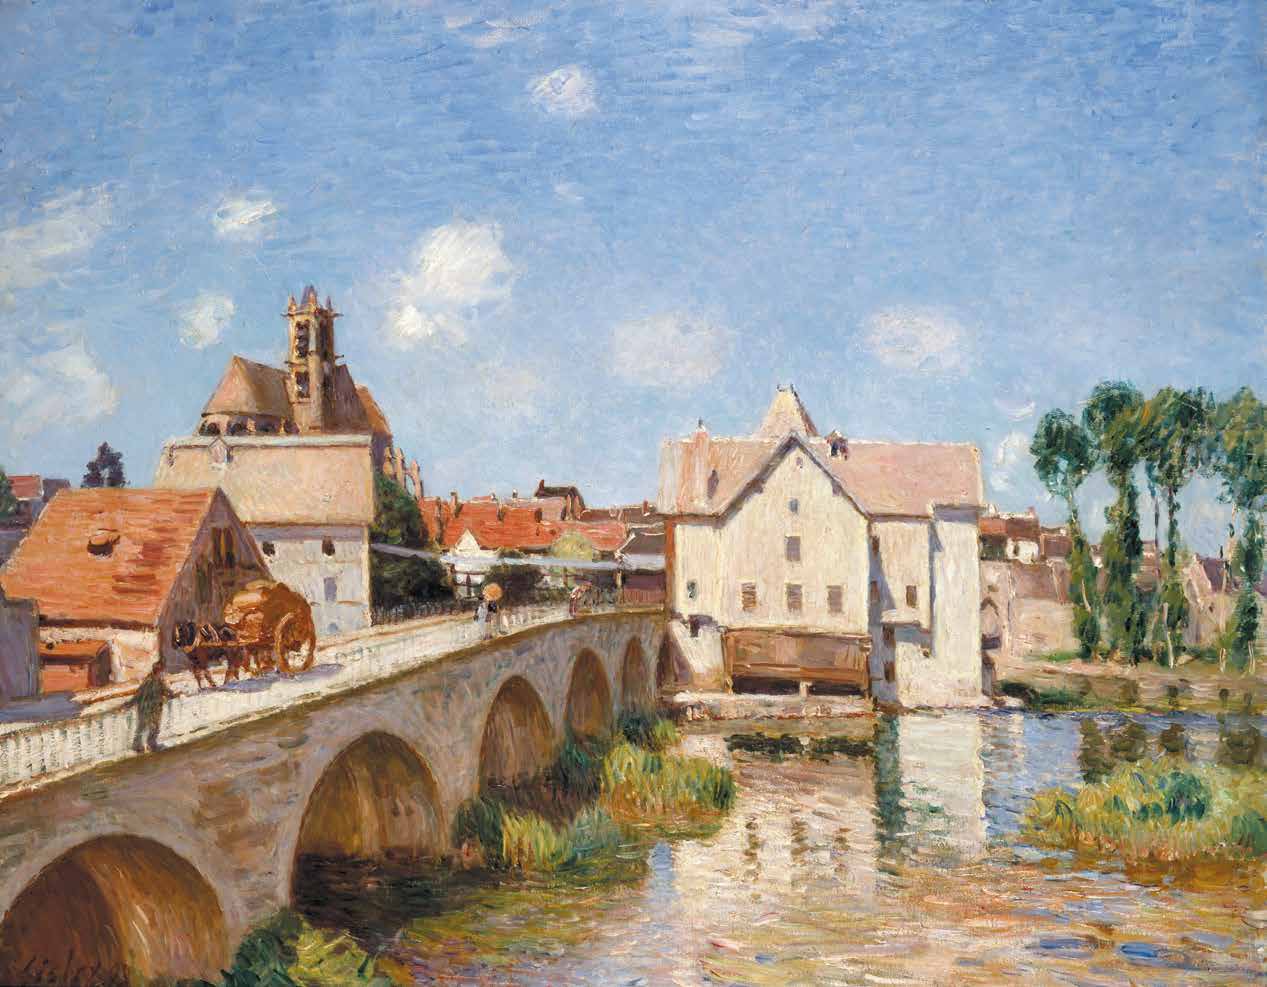 Alfred Sisley, "Le pont de Moret", 1893, Musée d’Orsay, Paris